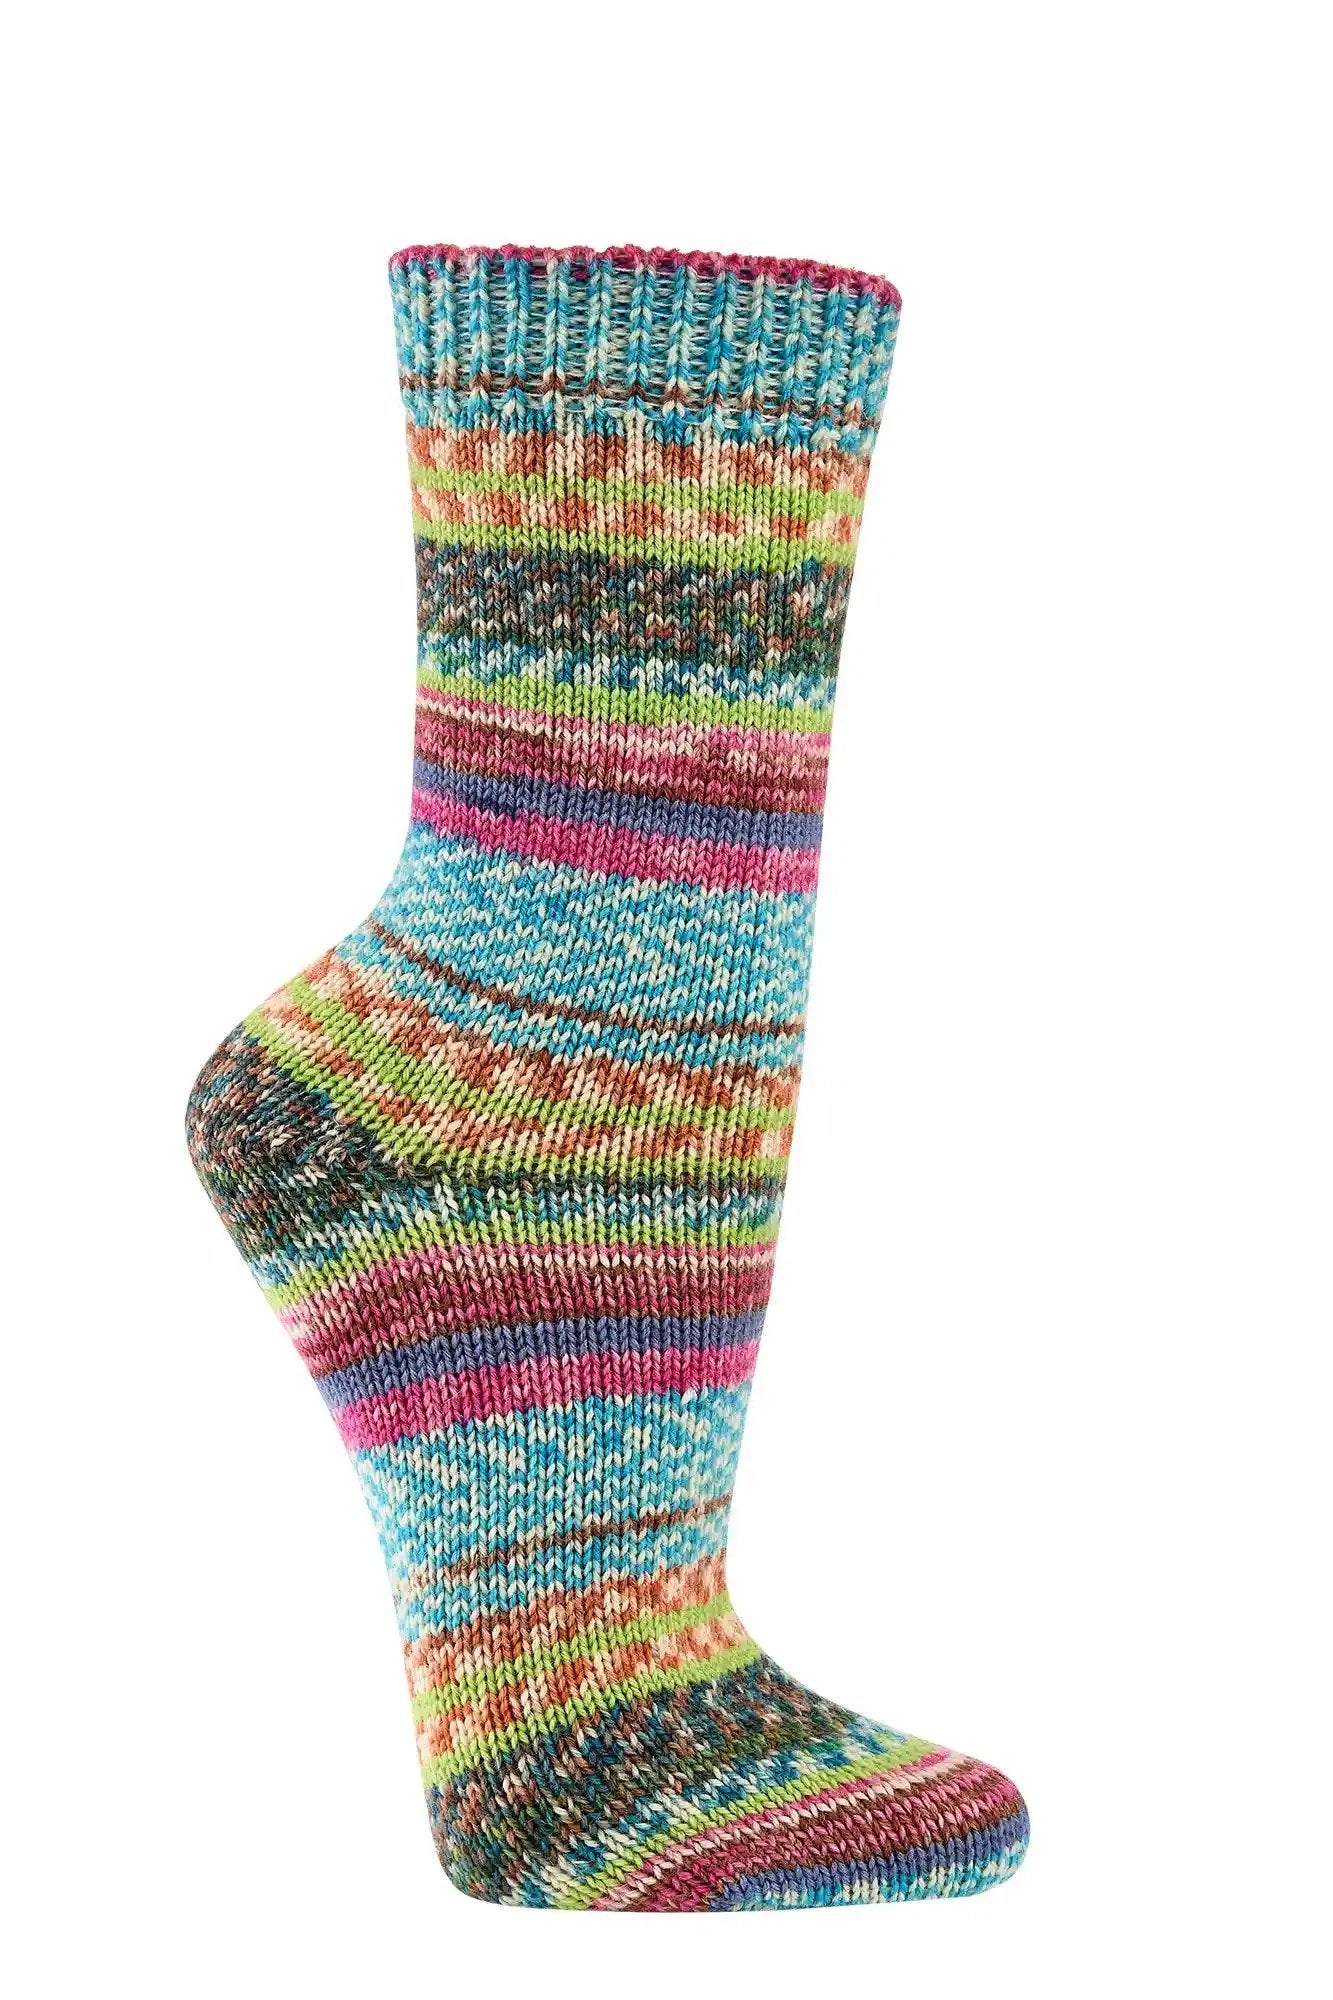 2 o 4 pares de calcetines calentitos con 70% de lana en muchos colores bonitos, como los de la abuela.